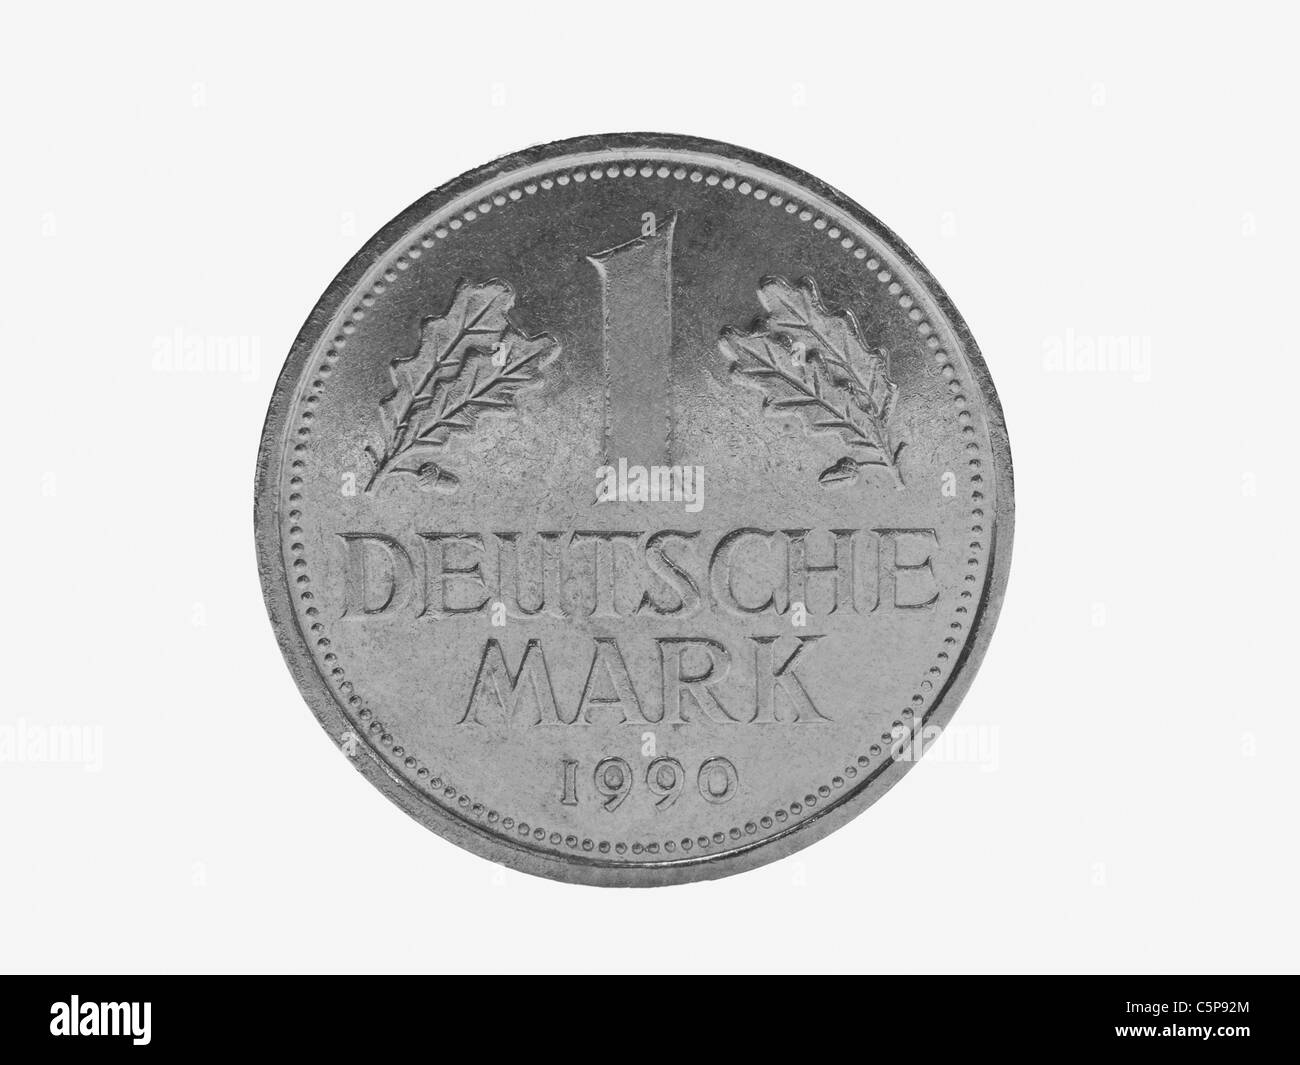 Detailansicht einer ein D-Mark Münze | Detail photo of a German Mark coin Stock Photo